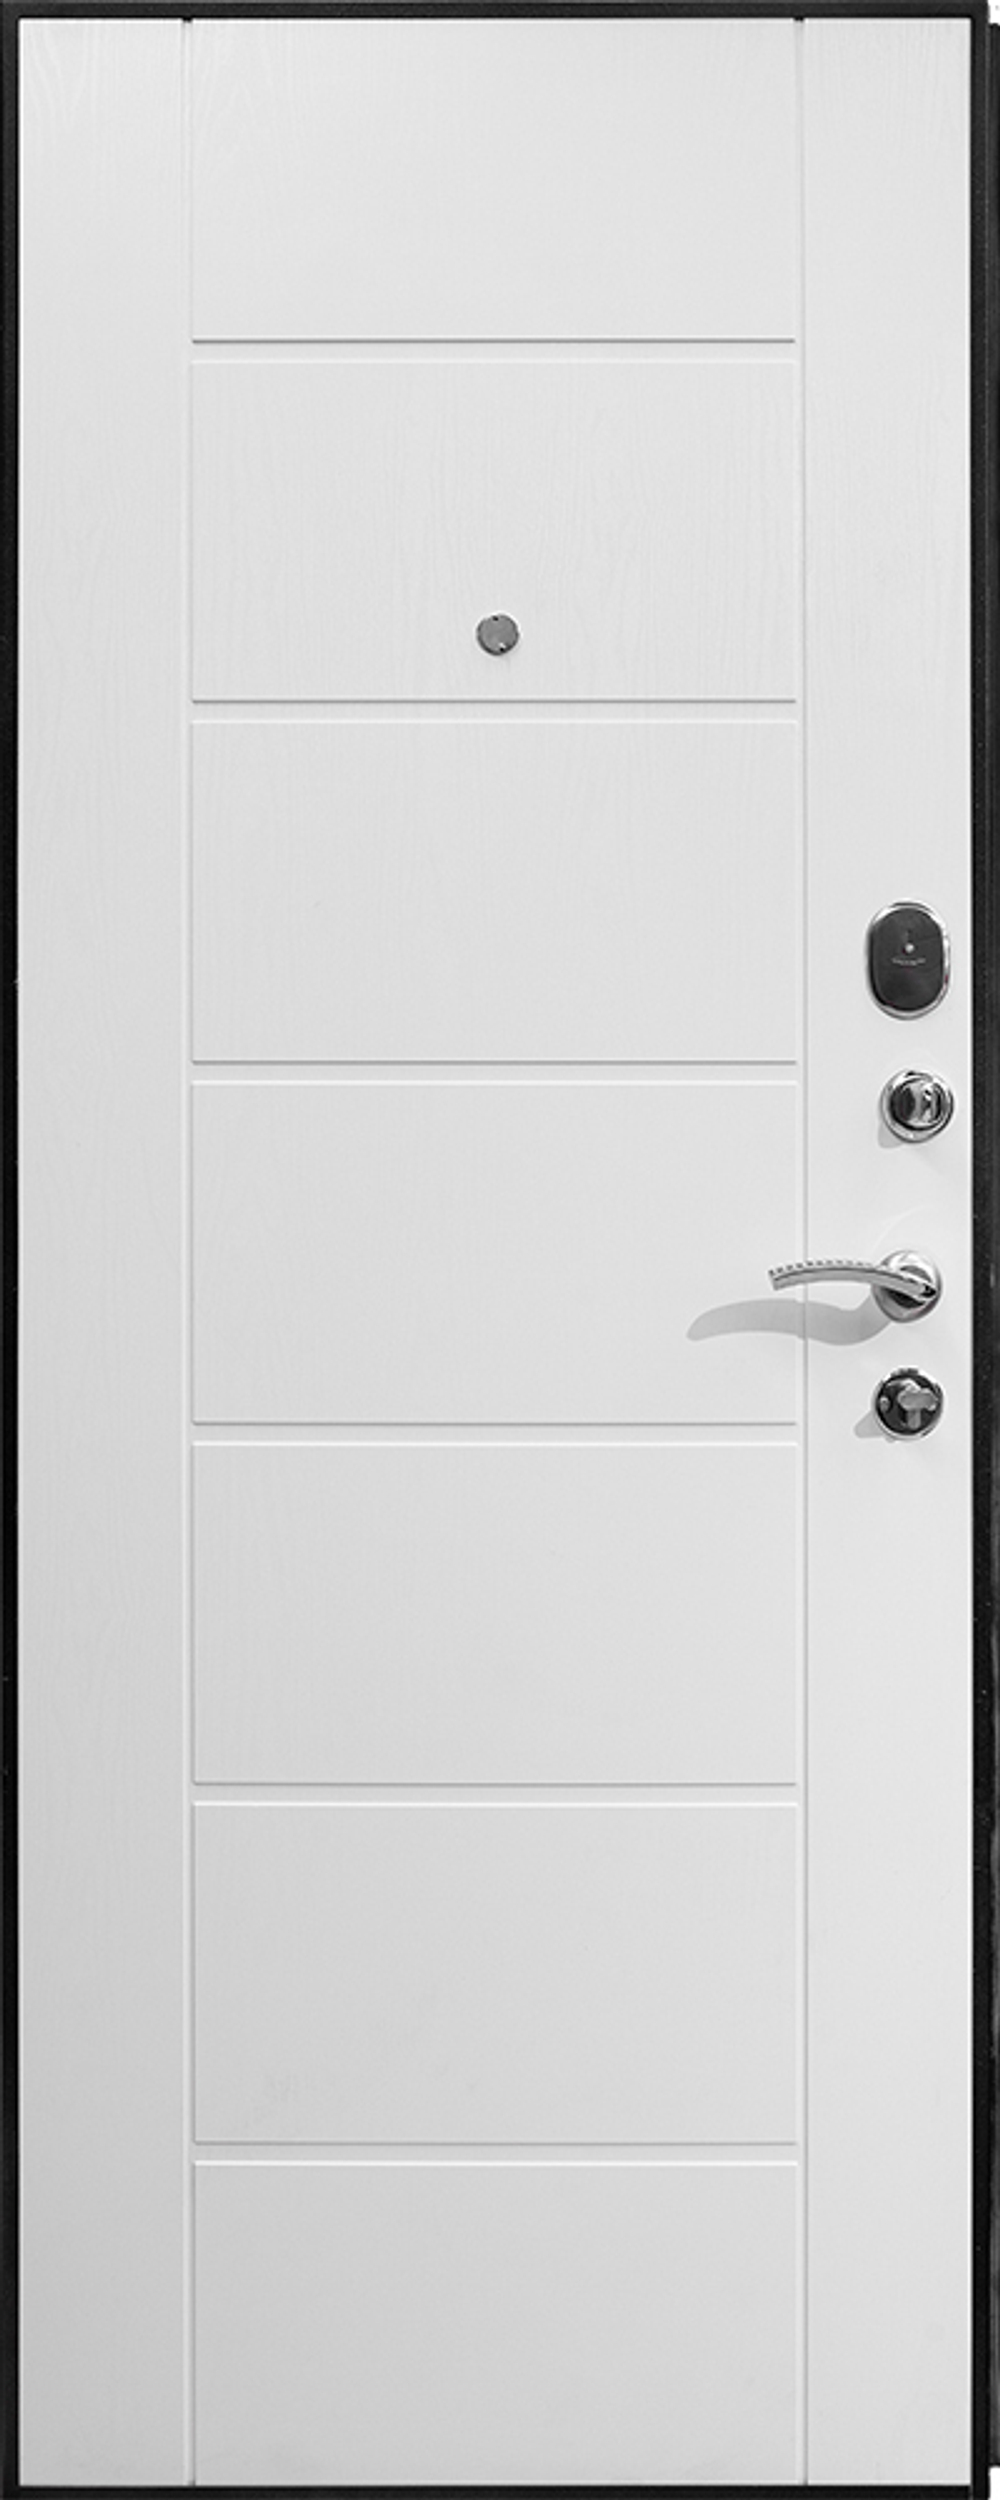 Входная дверь Теплолюкс Дизайн